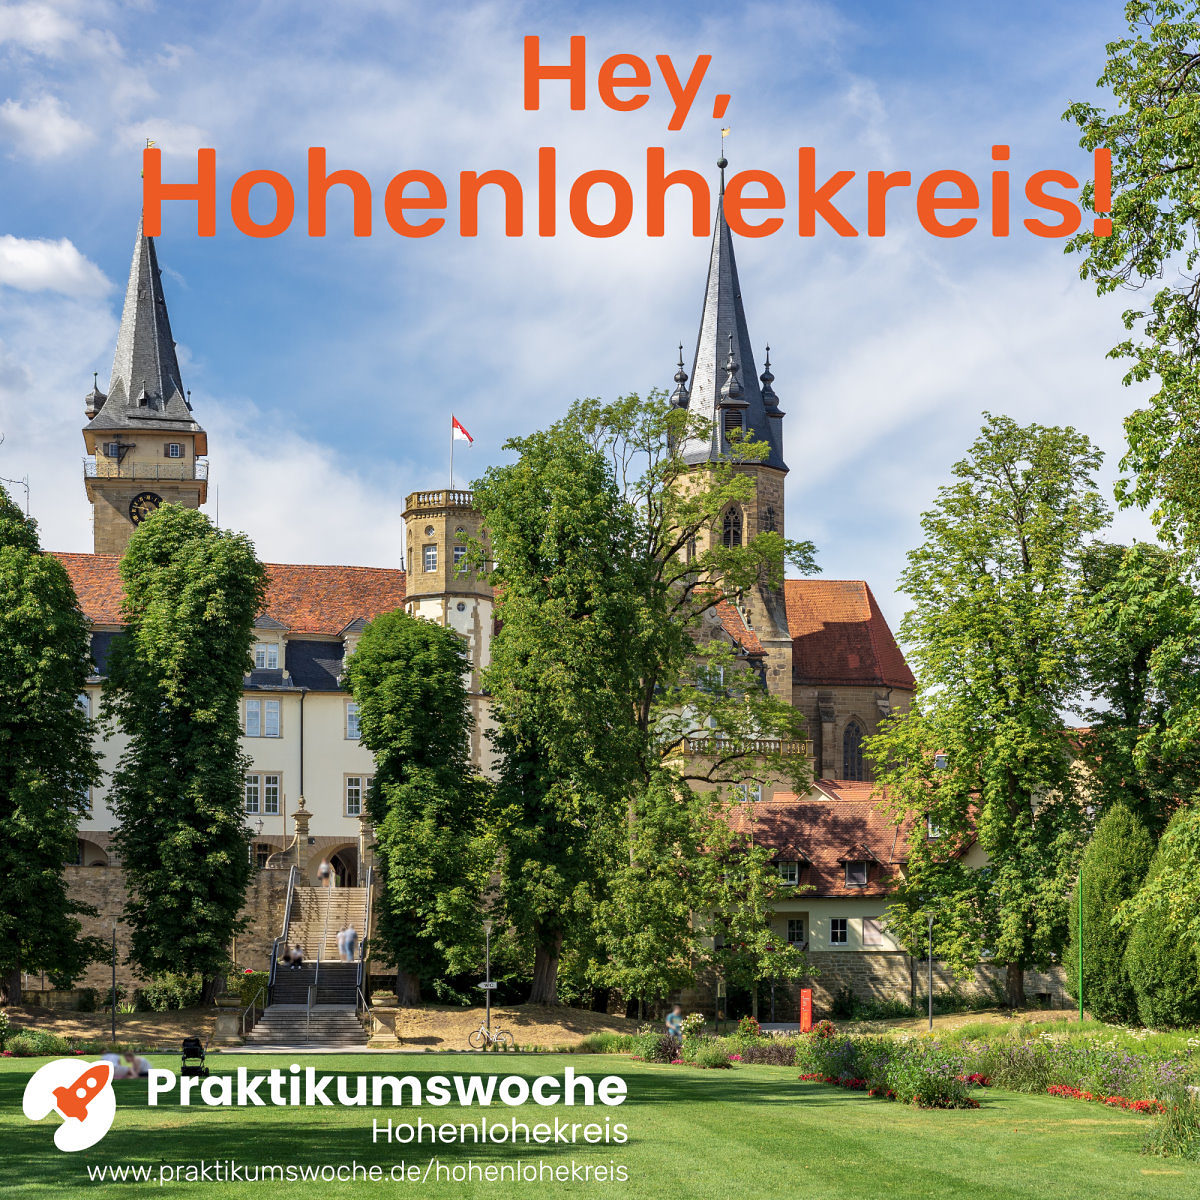 Hofgarten und Stiftskirche in Öhringen, oben oranger Schriftzug Hey, Hohenlohekreis, unten in weiß Logo Praktikumswoche + URL